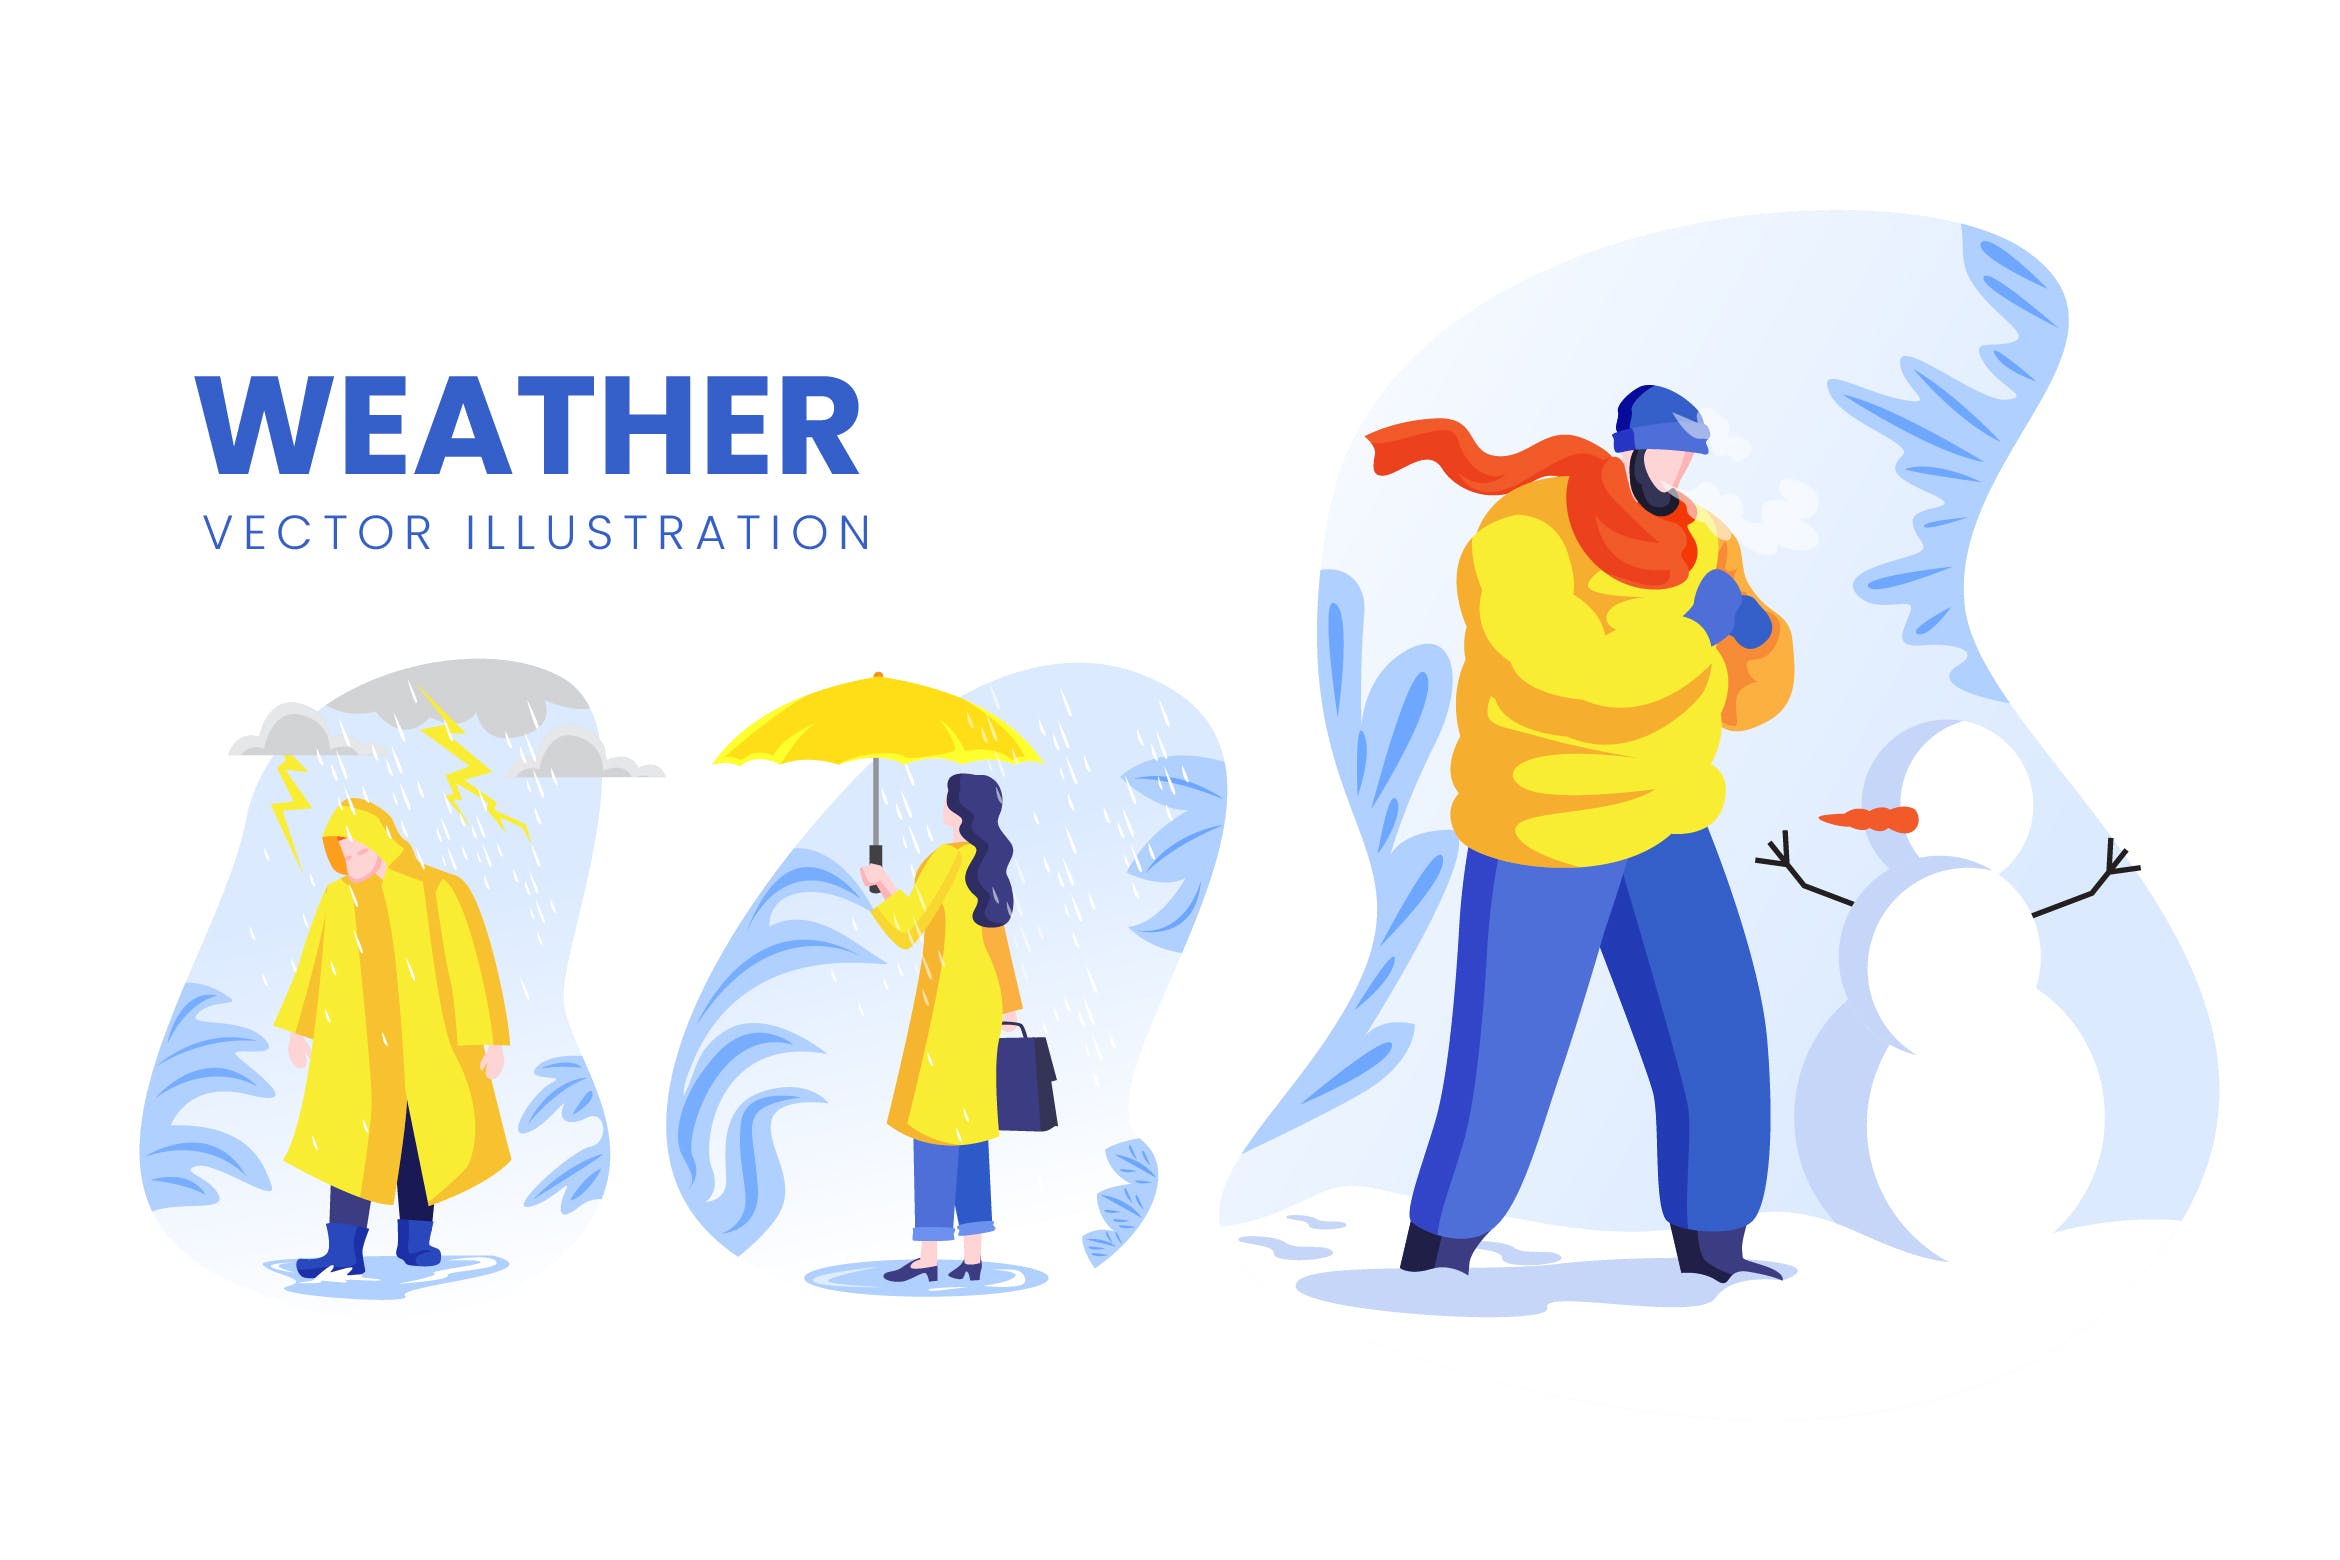 天气预报主题人物形象第一素材精选手绘插画矢量素材 Weather Condition Vector Character Set插图